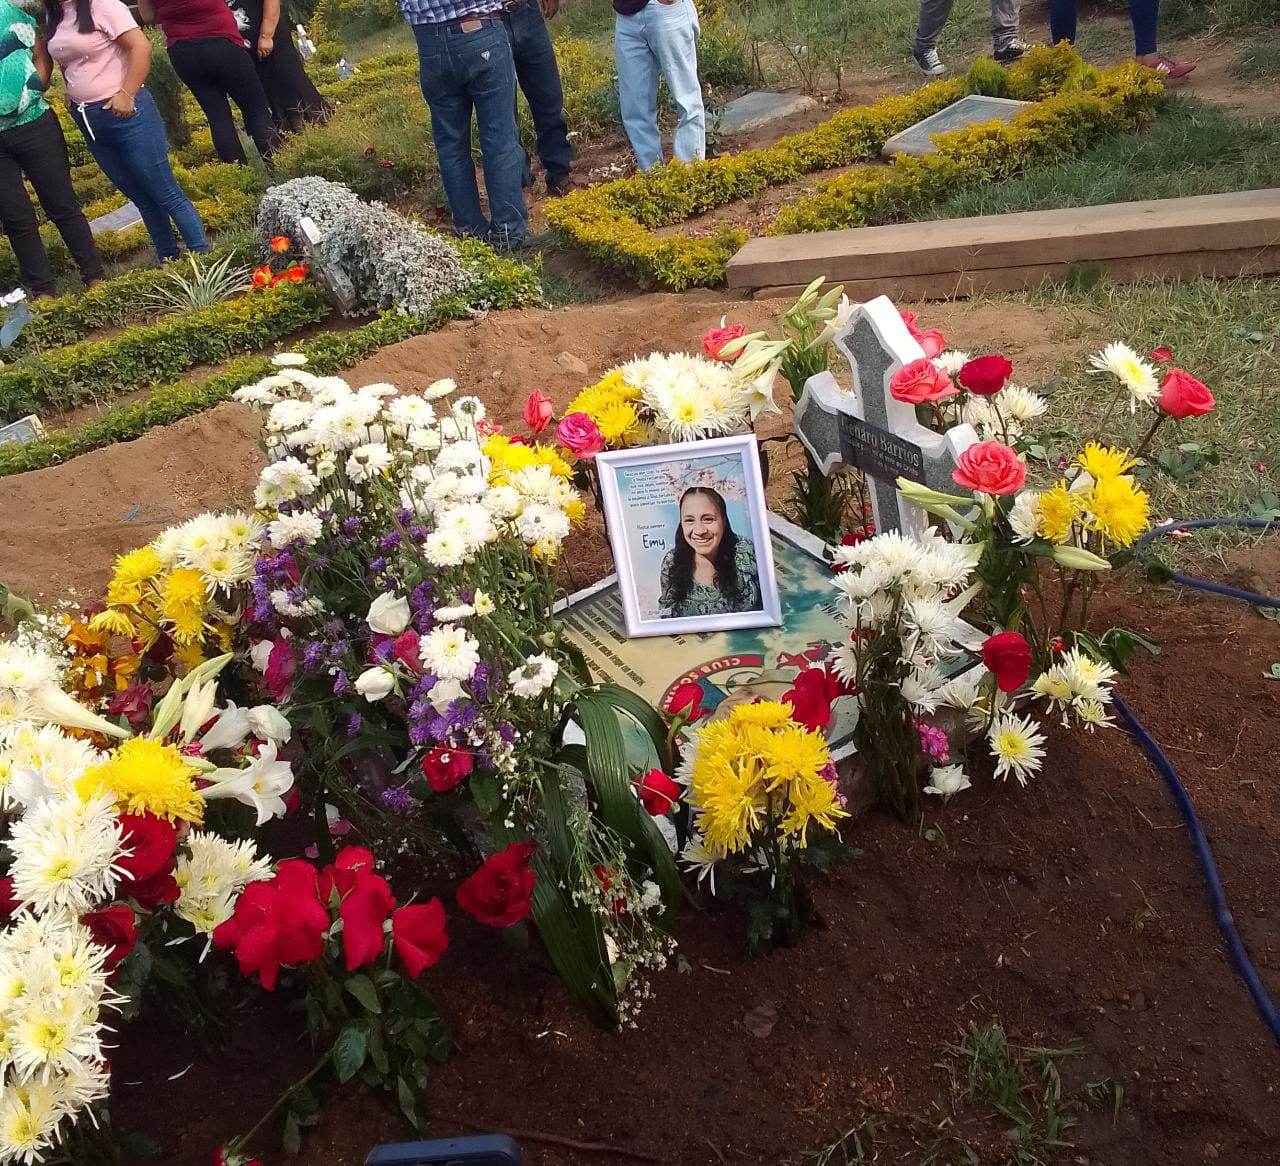 Esmilta Esther Barrios Rodas, de 55 años, murió trágicamente el 20 de abril en la calzada Raúl Aguilar Batres y 51 calle zona 11 de Villa Nueva. Fue sepultada este 22 de abril en el cementerio jardín Las Gardenias de esa localidad. (Foto Prensa Libre: cortesía familia Barrios).